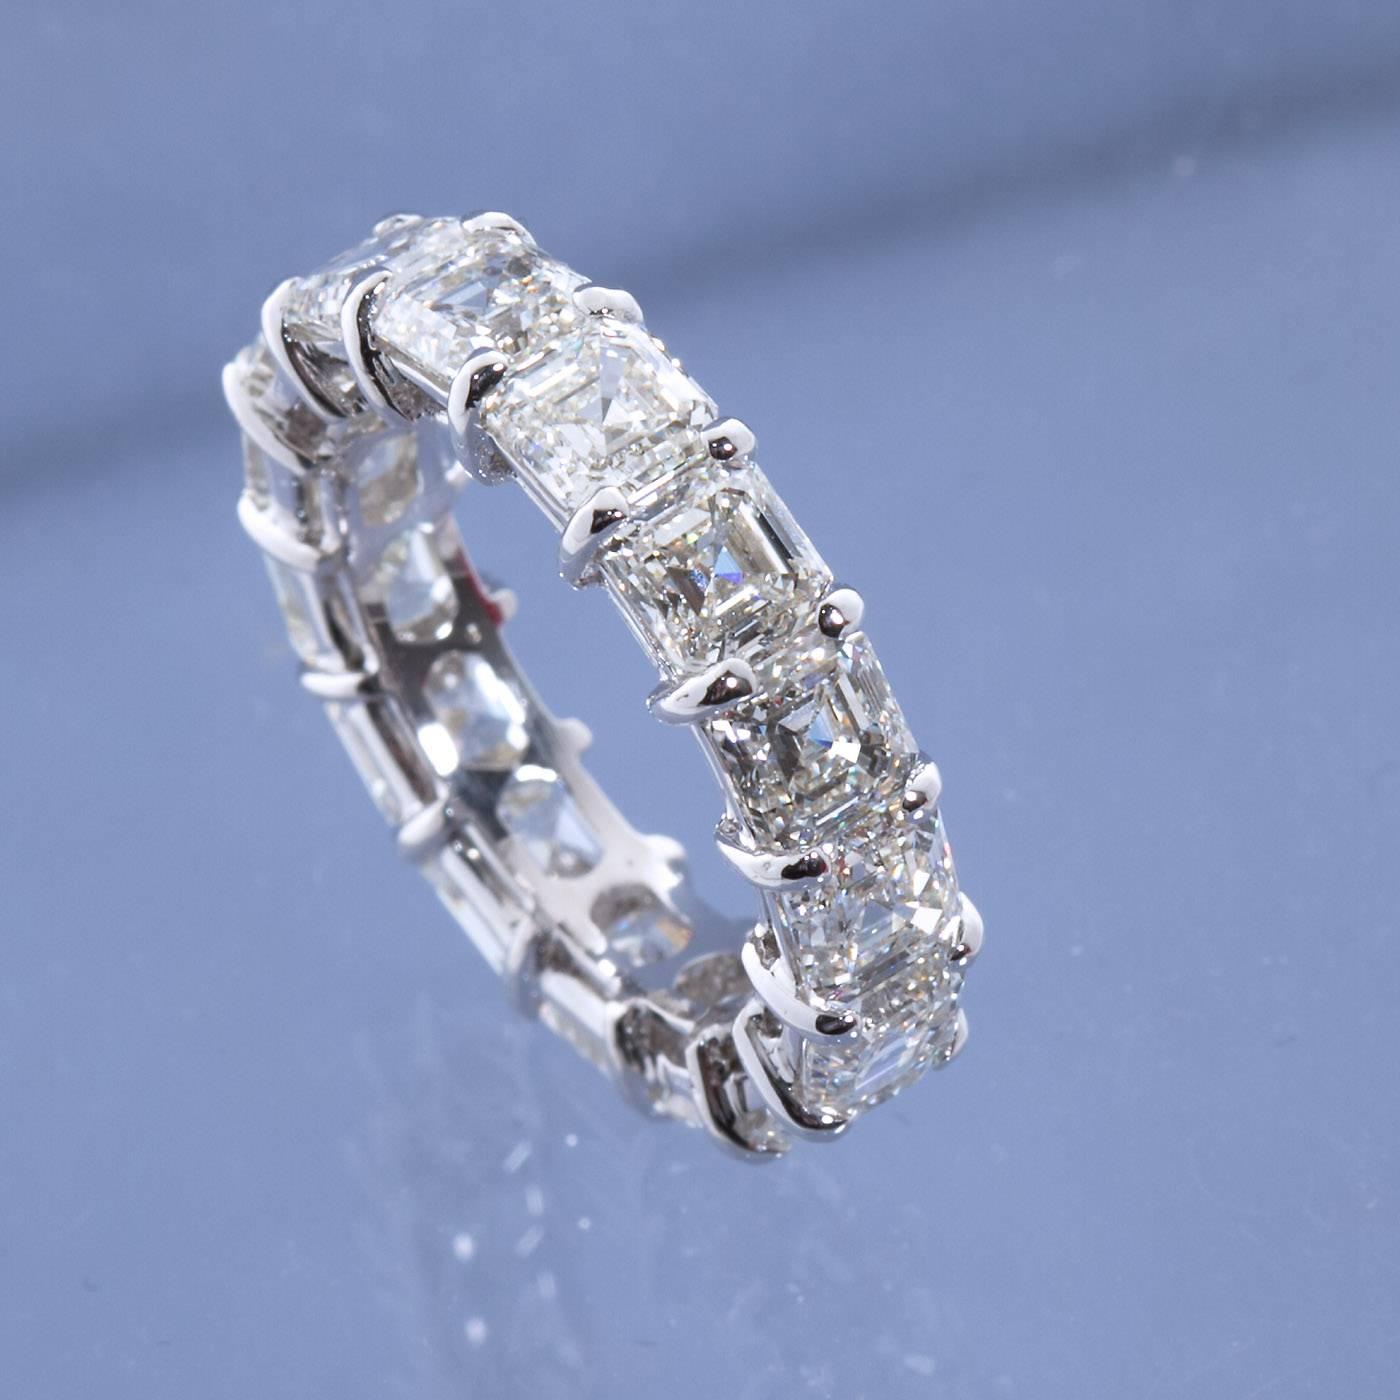 Un anneau d'anniversaire en platine contenant 15 diamants carrés de taille émeraude (Asscher Cut) de couleur H et de pureté VVS1-2 pesant un total de 7,93 carats (0,52 carat en moyenne pour chaque pierre).  Taille de la bague : environ 6 US.

No.